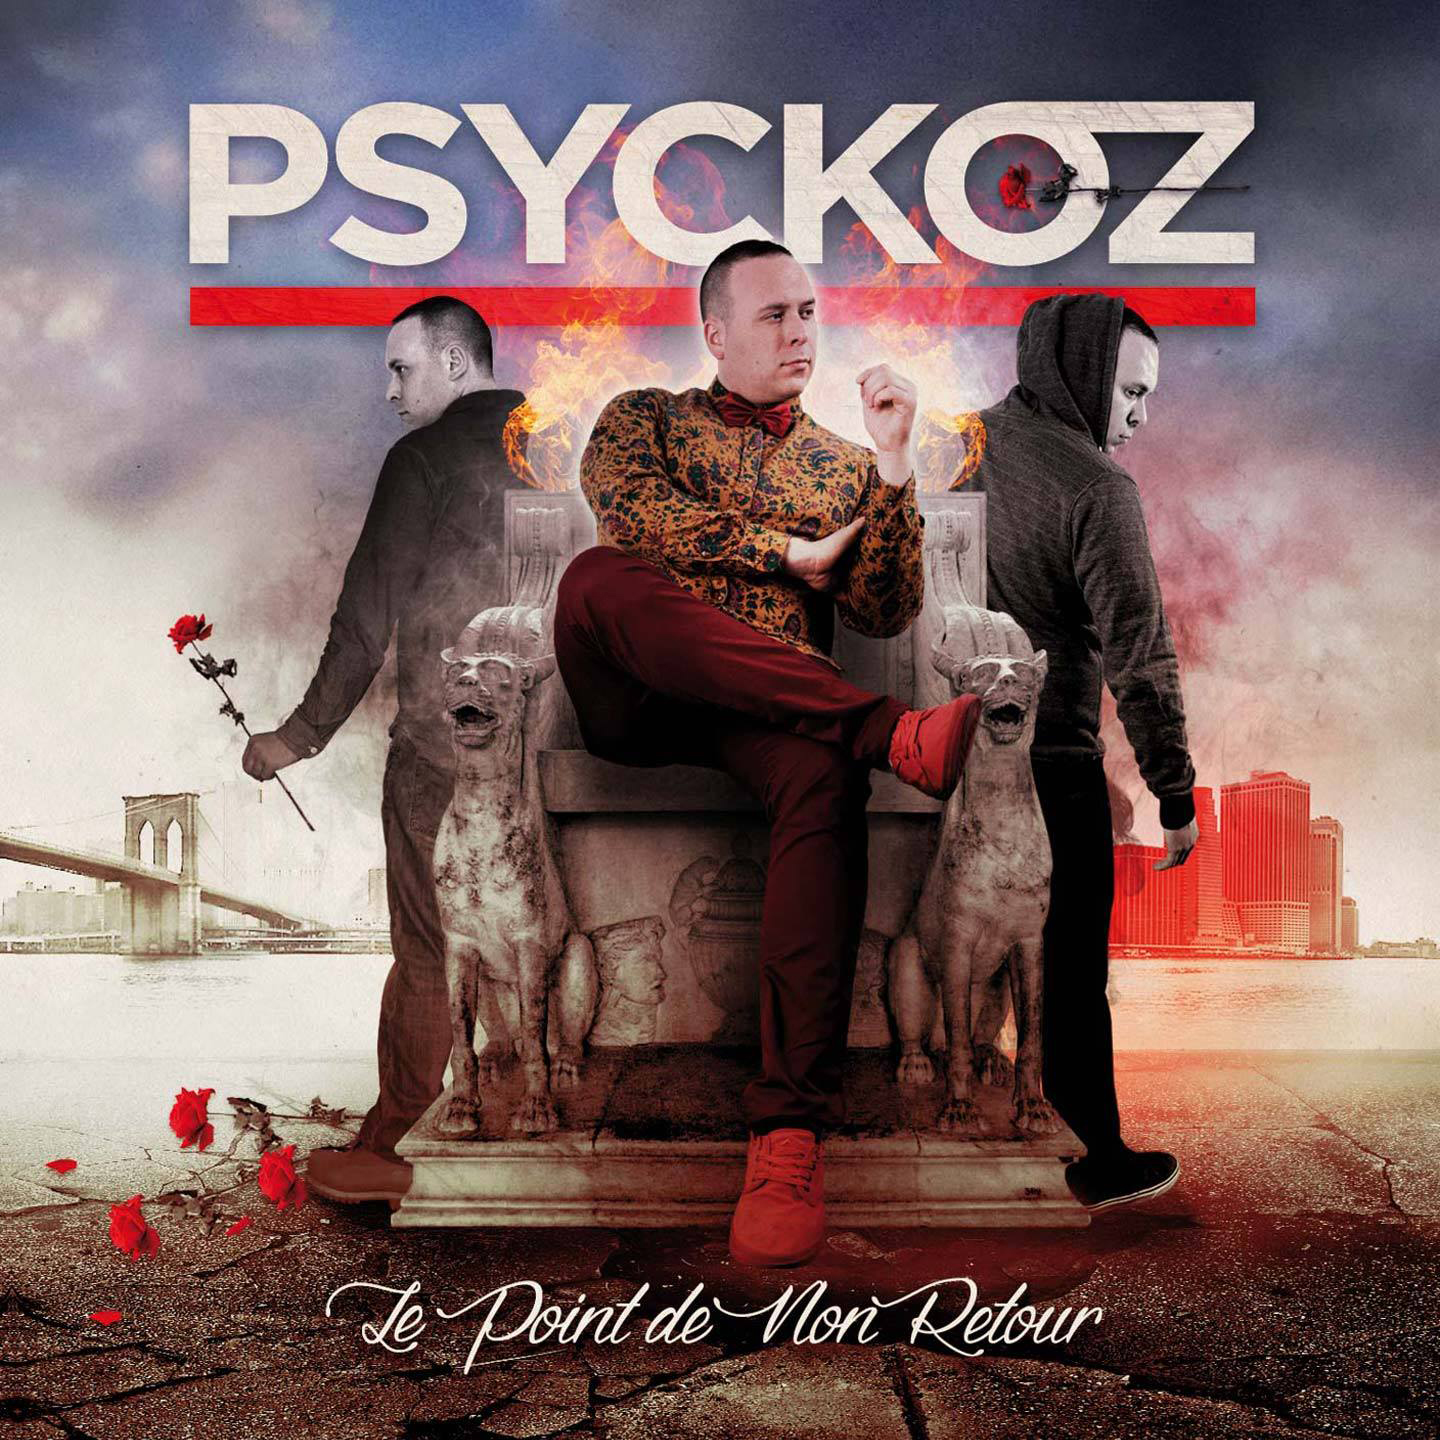 Cover de l'album de Psychoz - Point de non retour. Réalisé par Loseou